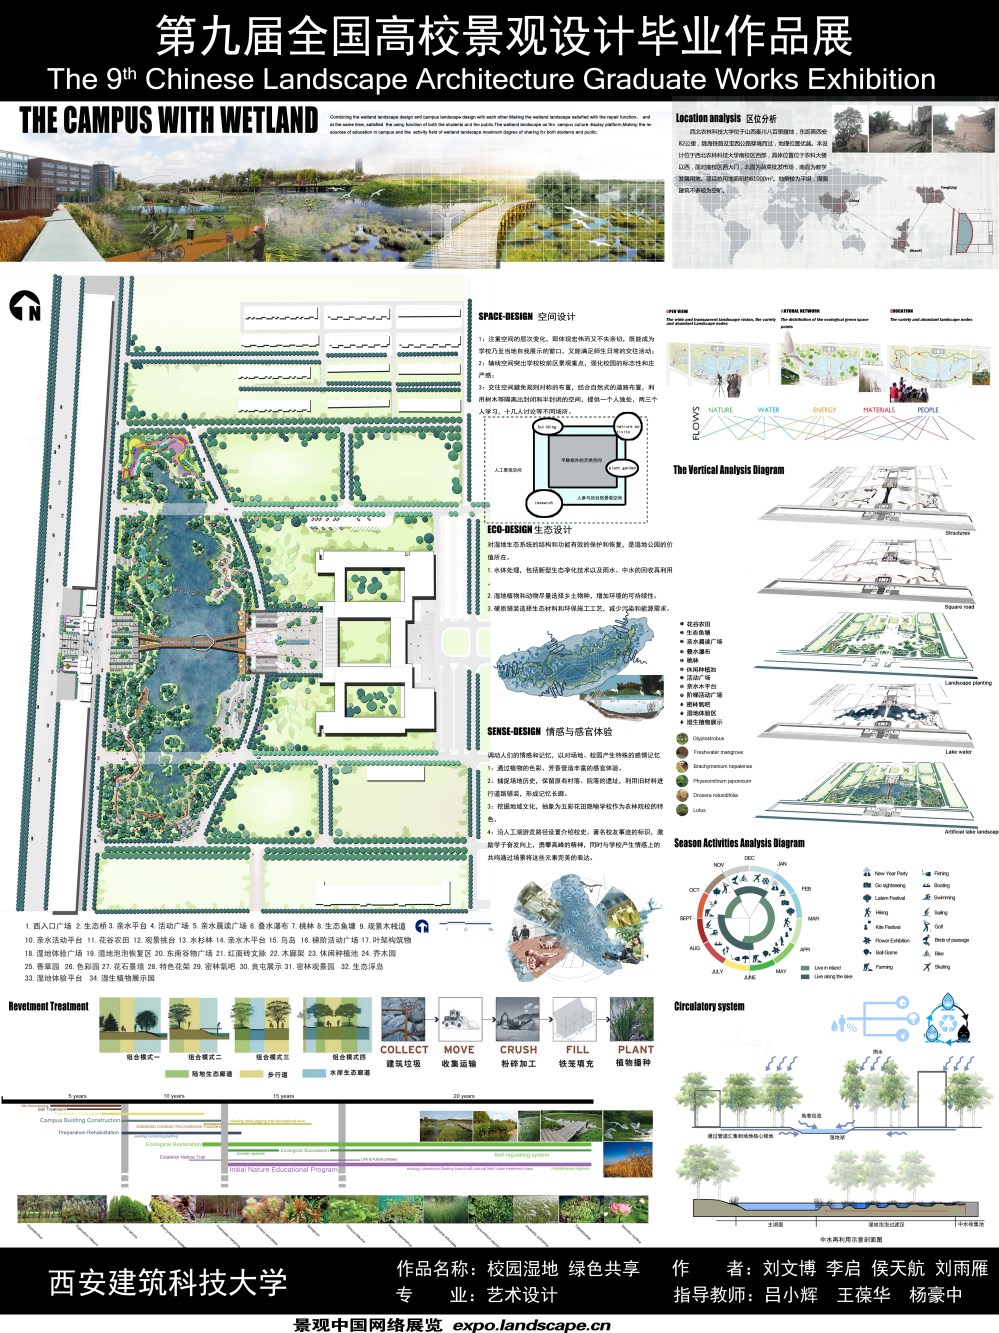 开放校园生态湿地 绿色资源共享-1